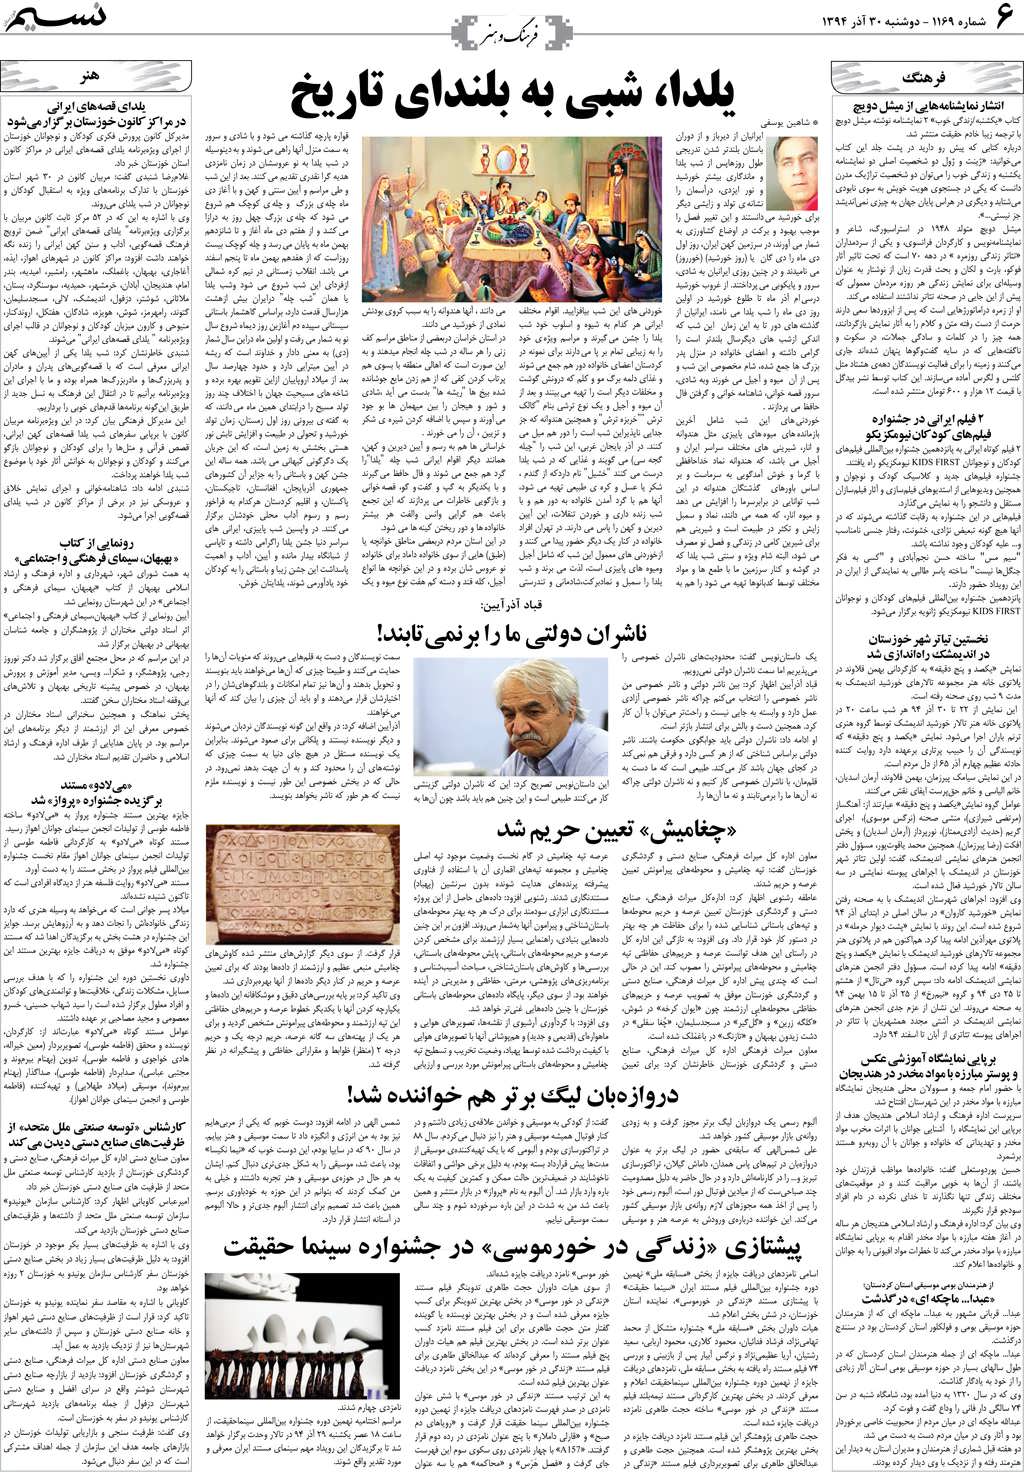 صفحه فرهنگ و هنر روزنامه نسیم شماره 1169